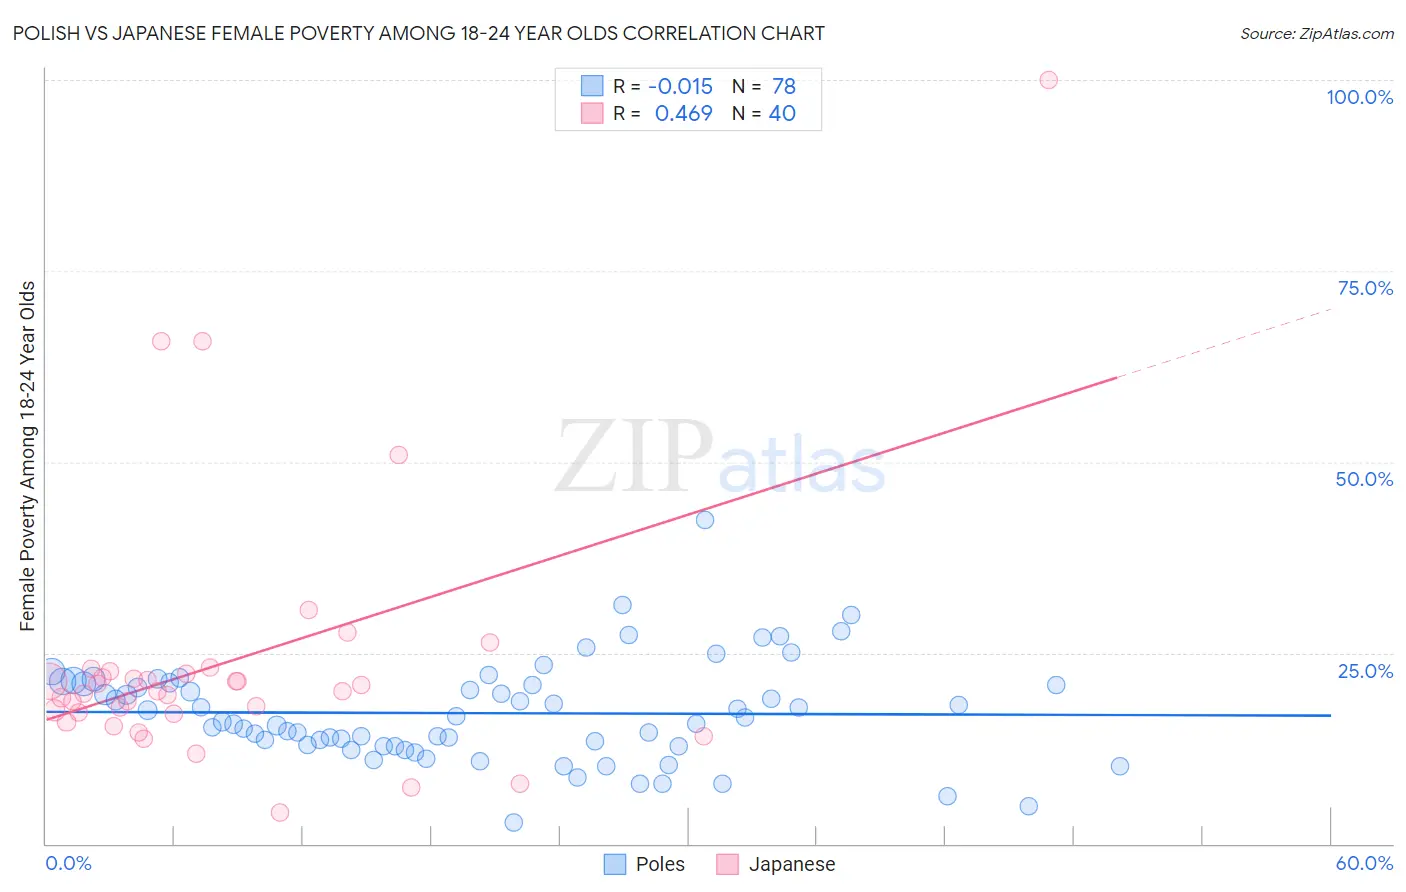 Polish vs Japanese Female Poverty Among 18-24 Year Olds